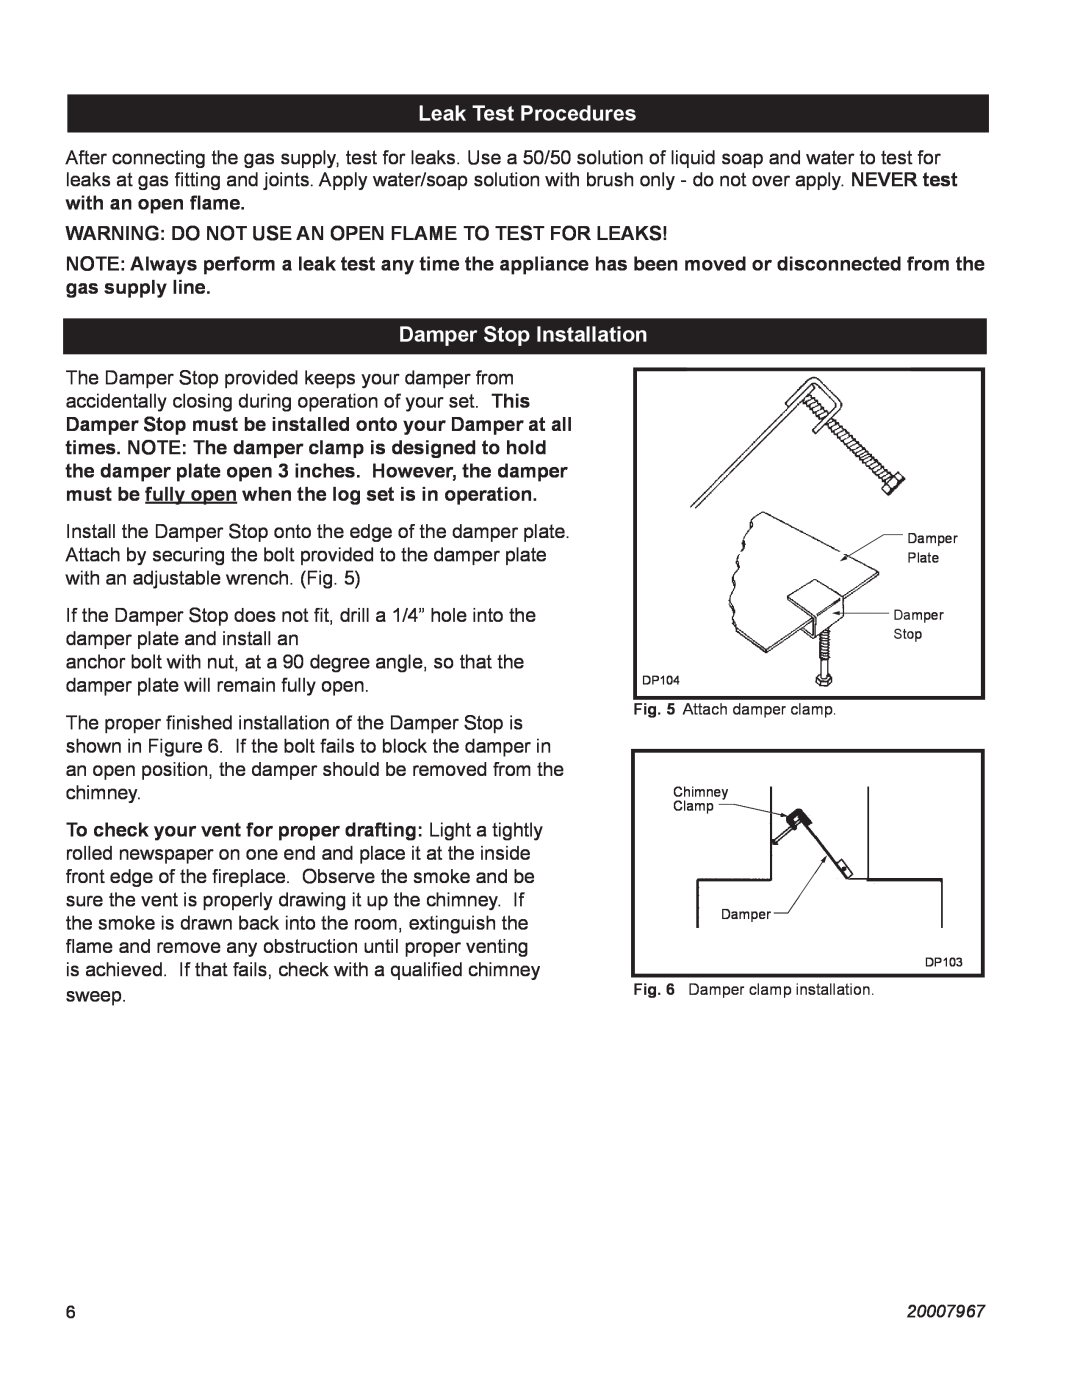 Vermont Casting OD24SHKN manual Leak Test Procedures, Damper Stop Installation 